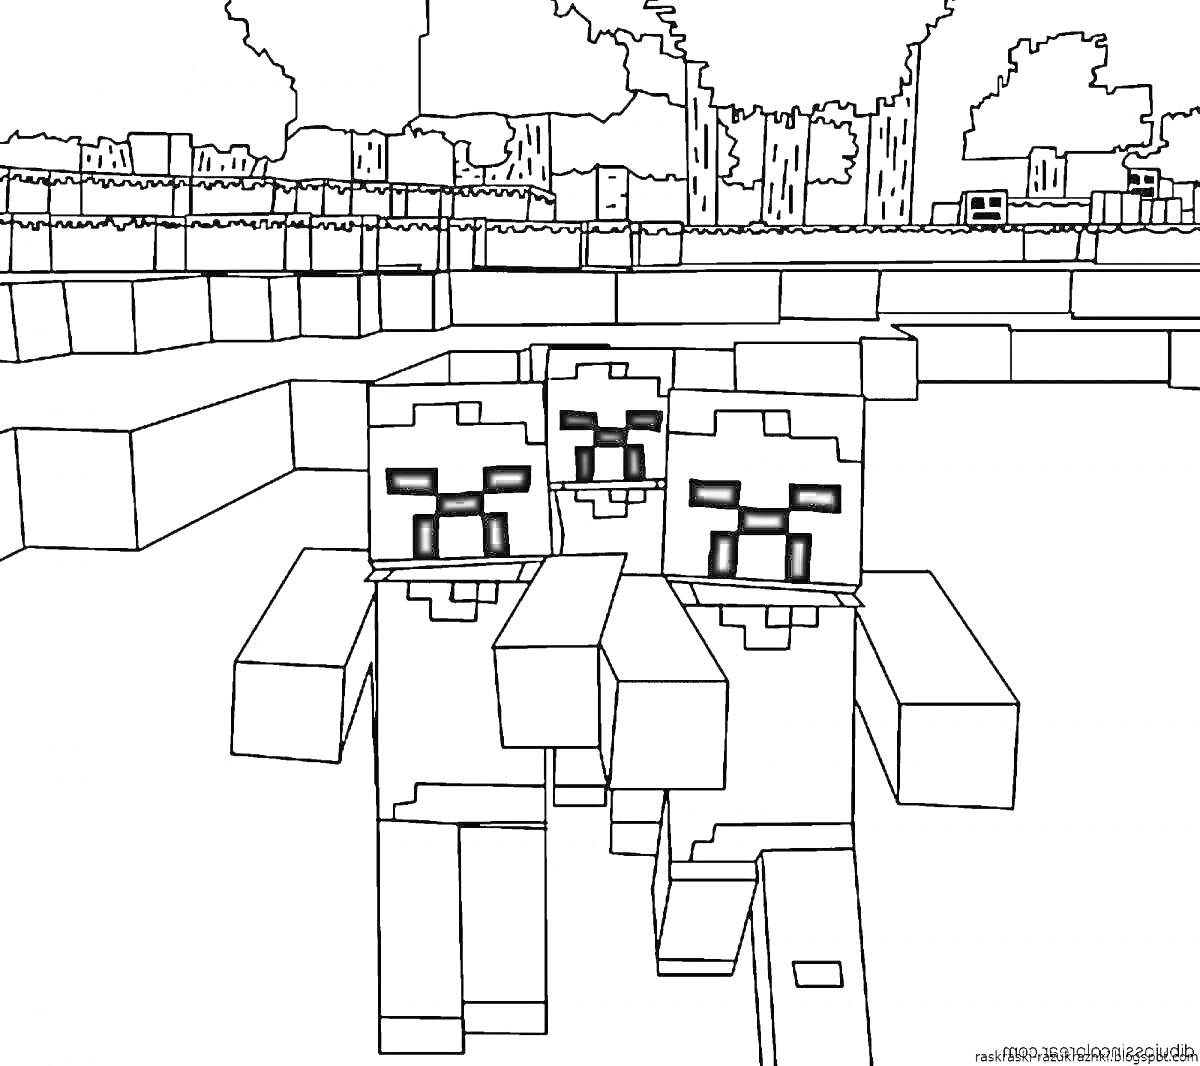 Три мутанта-зомби из Minecraft на фоне игрового пейзажа с деревьями и постройками